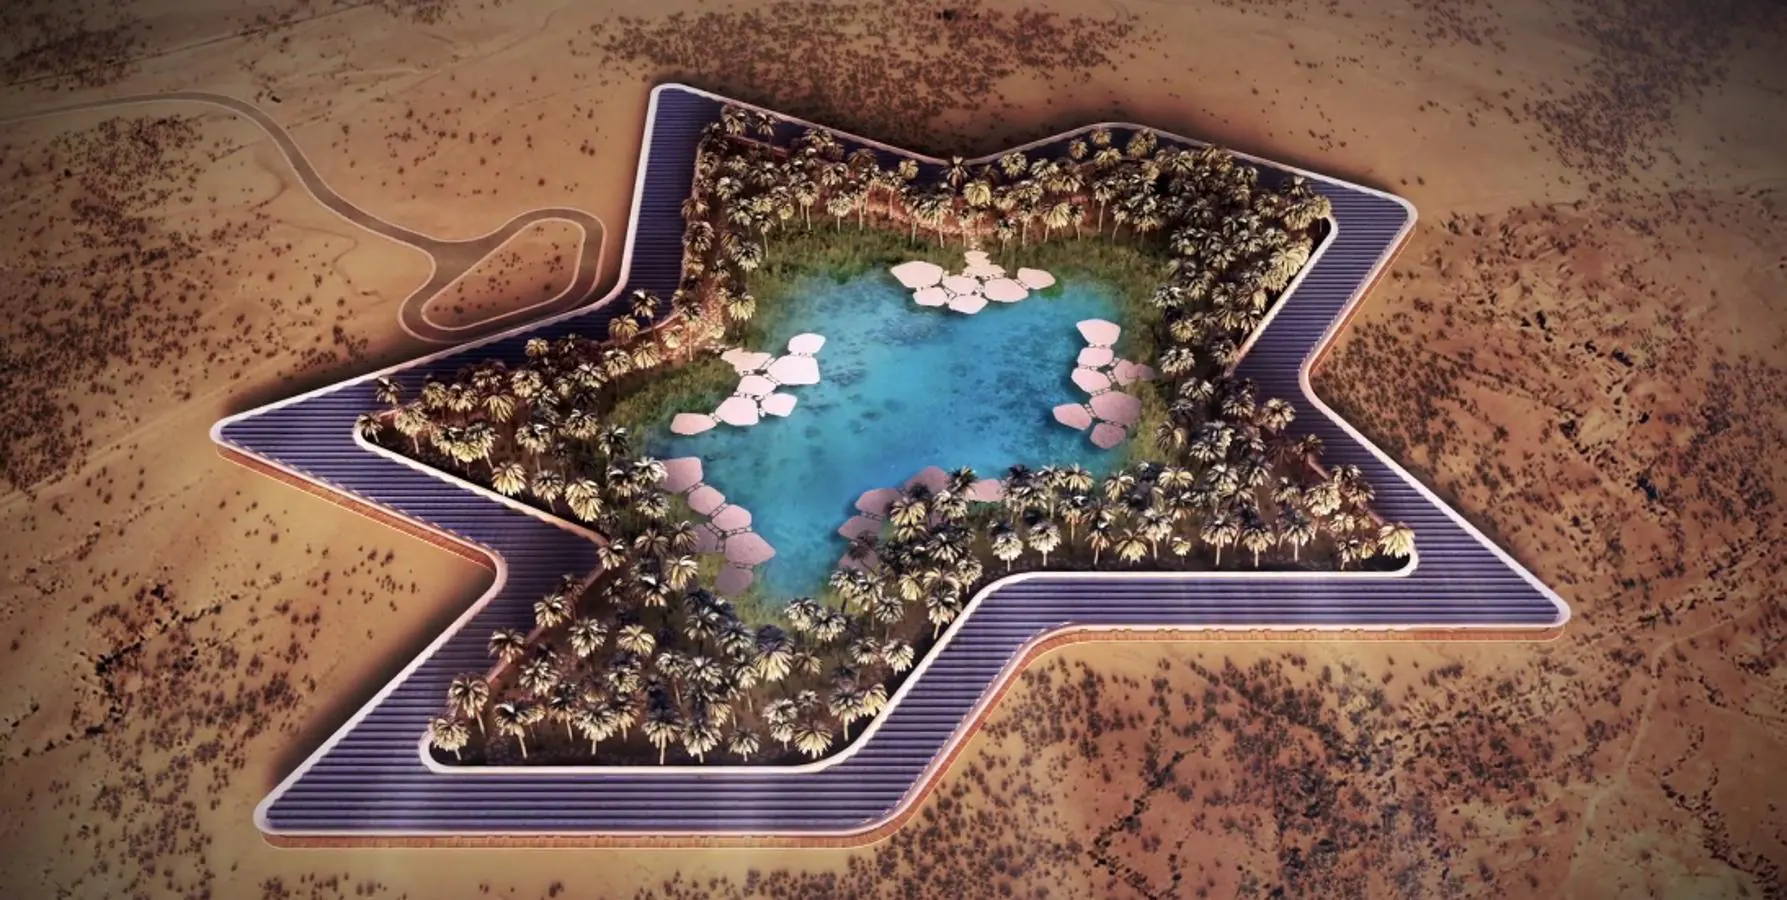 El diseño de las instalaciones simula la forma de una estrella en pleno desierto.